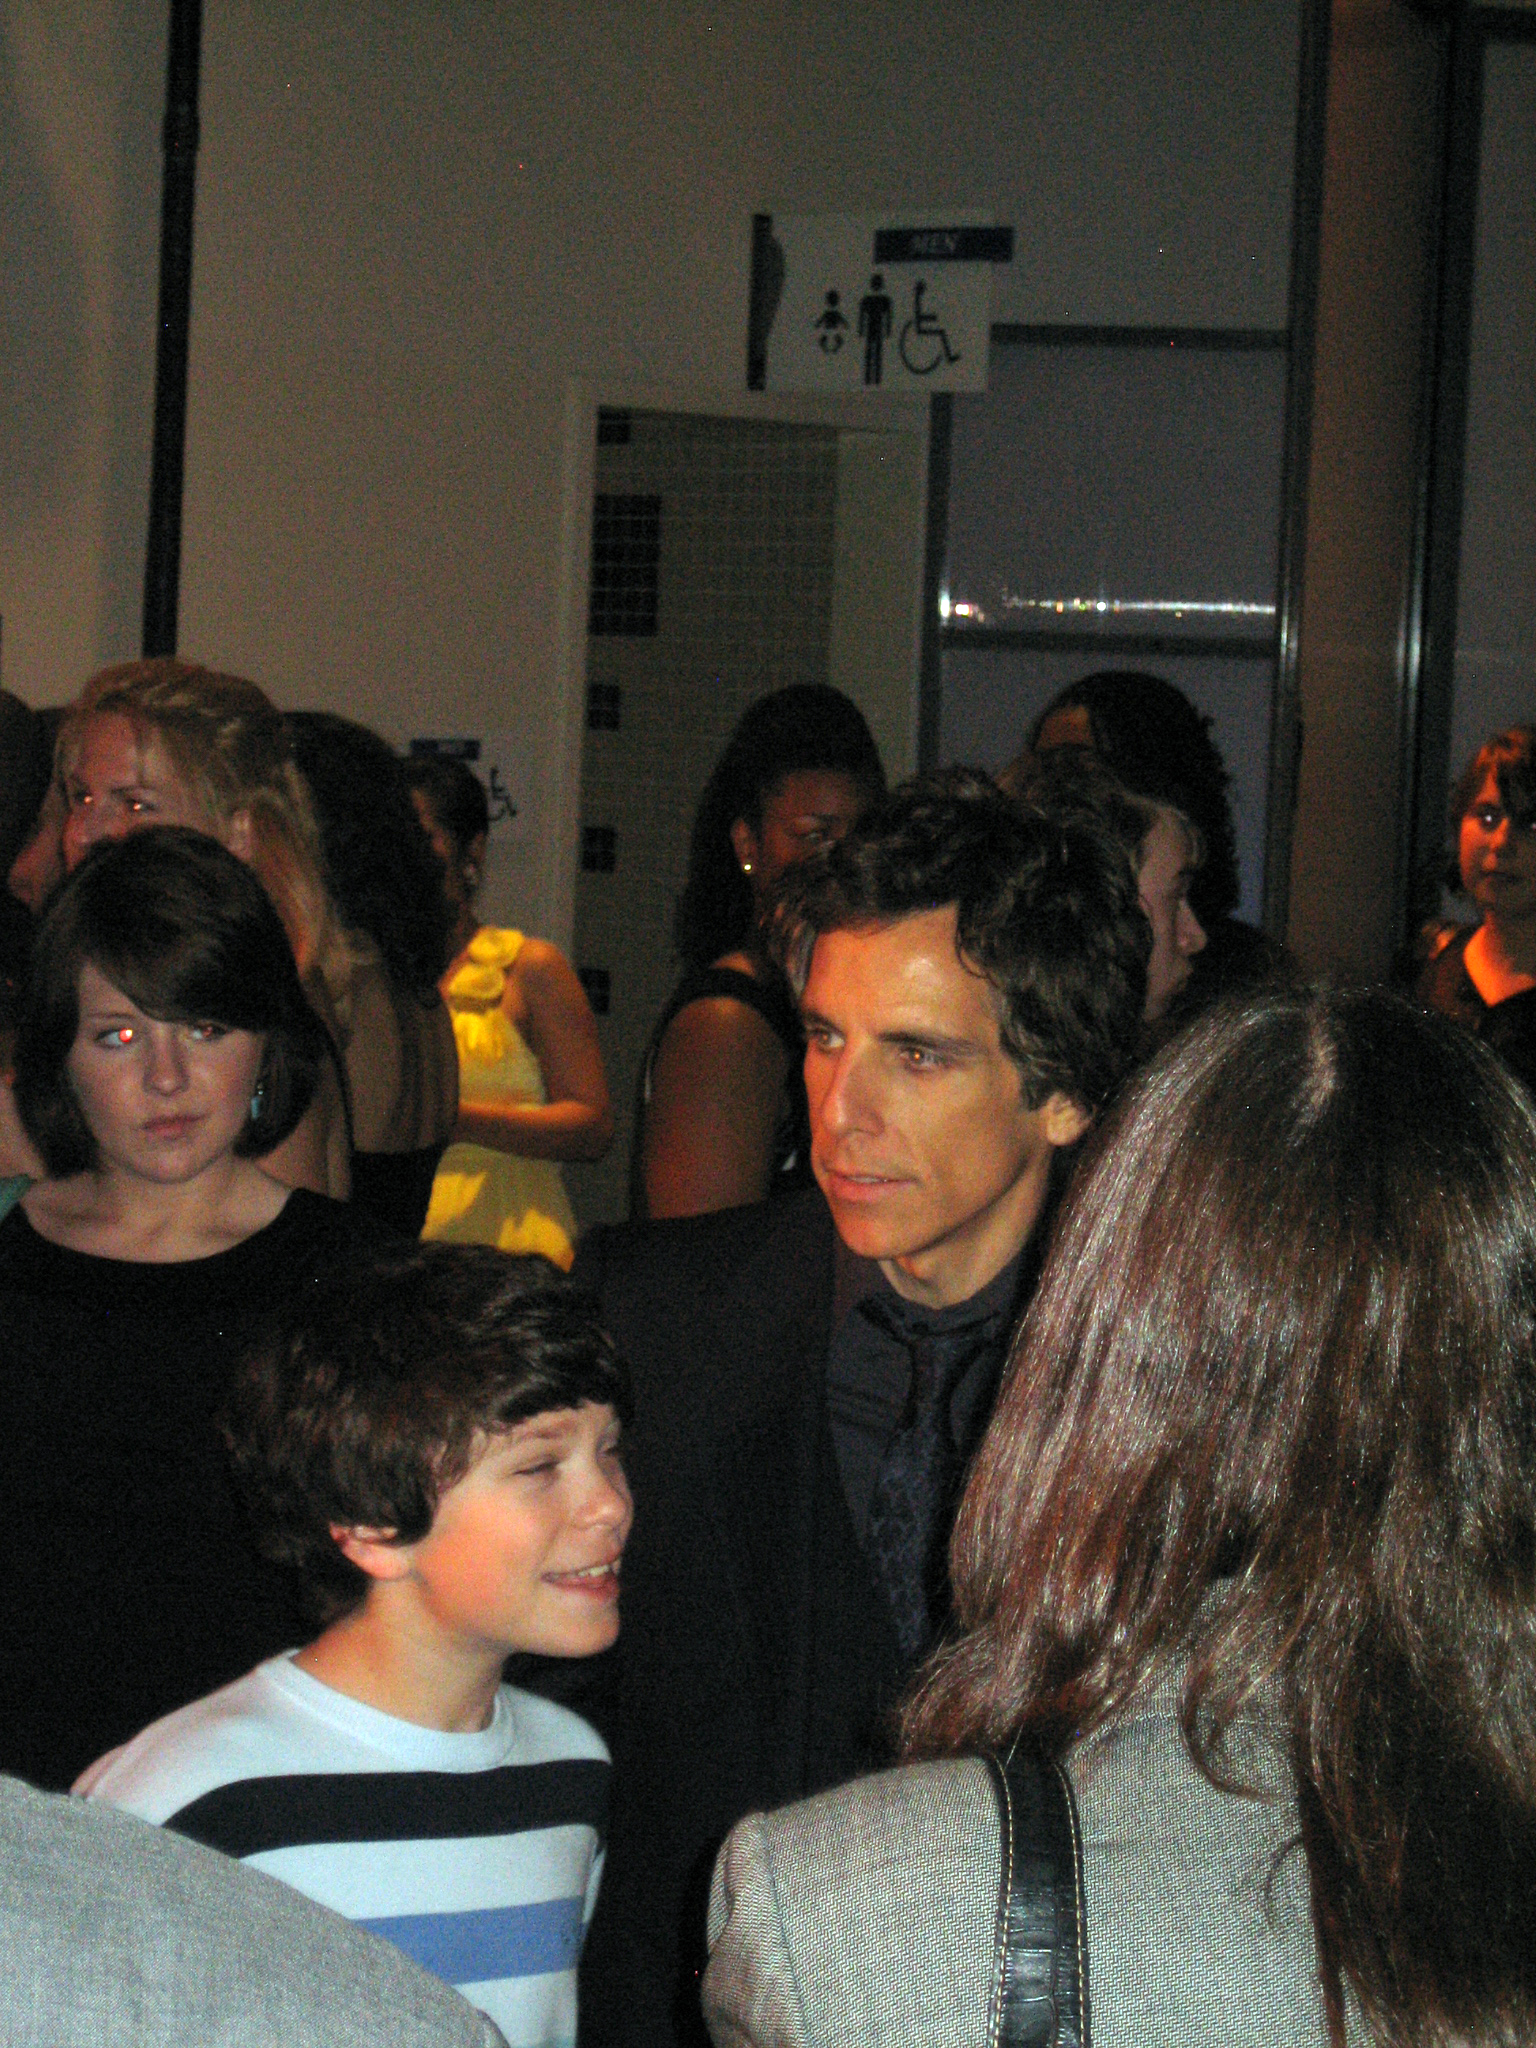 Premiere de "Noche en el museo 2" en la que Ben Stiller fue el perfecto anfitrión de una sesión canapera que no pasó del aprobado raspado